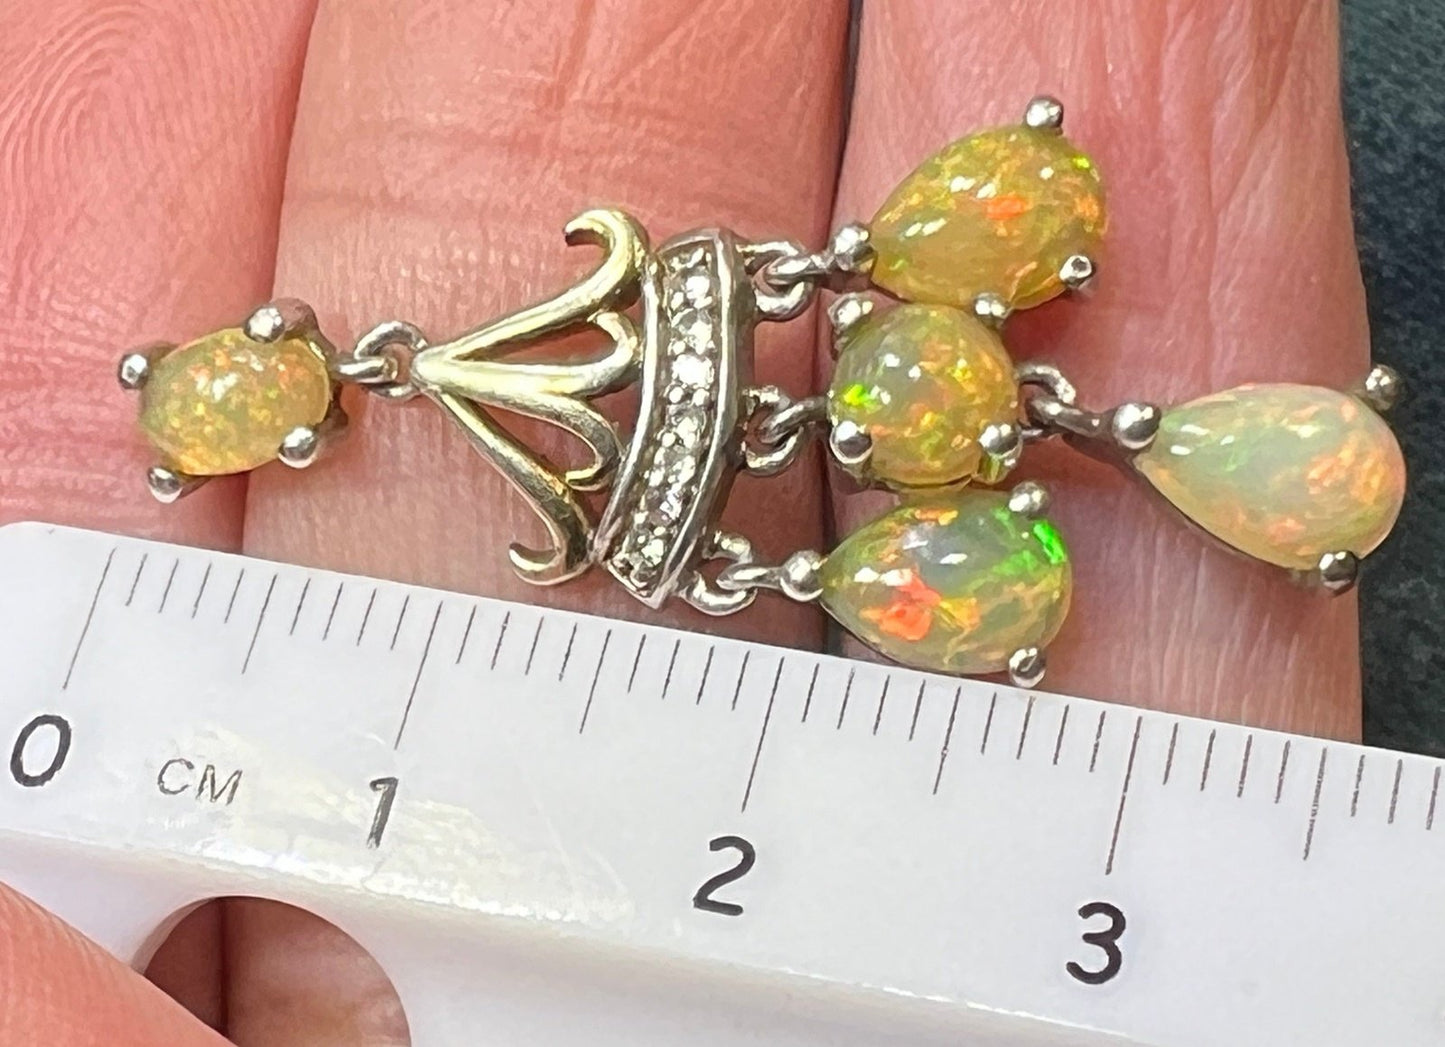 Ethiopian Welo Jelly Opal Dangle Chandelier Earrings. 1.5" 6g *Video*